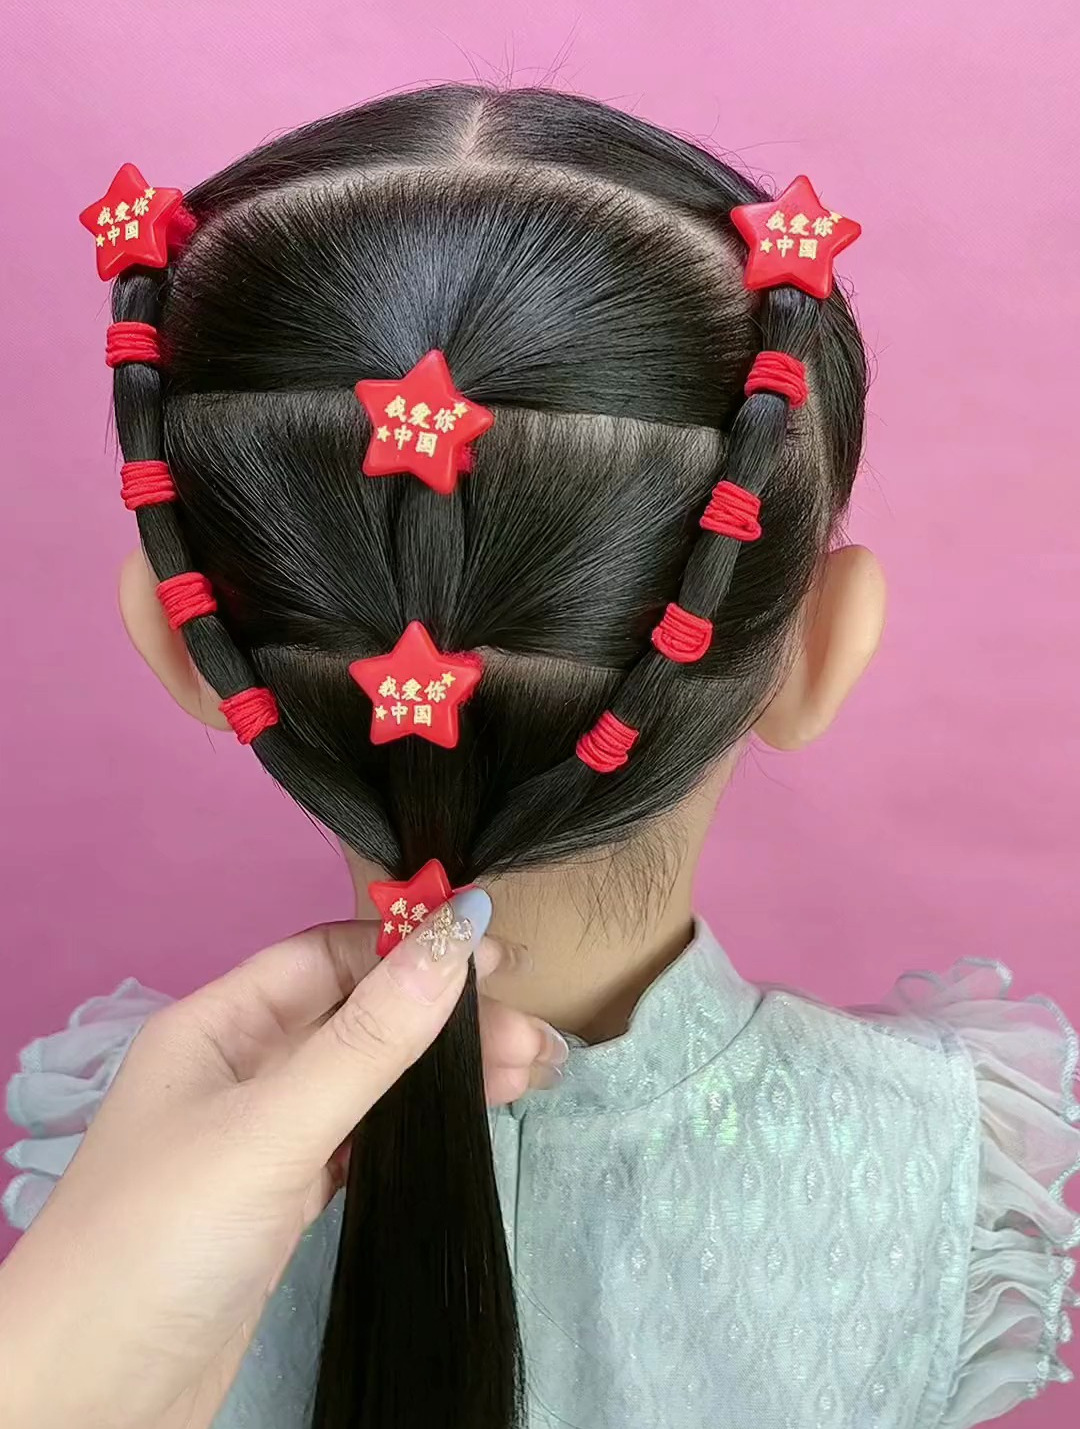 国庆节儿童马尾辫发型教程分享,简单实用,有女儿的学起来吧